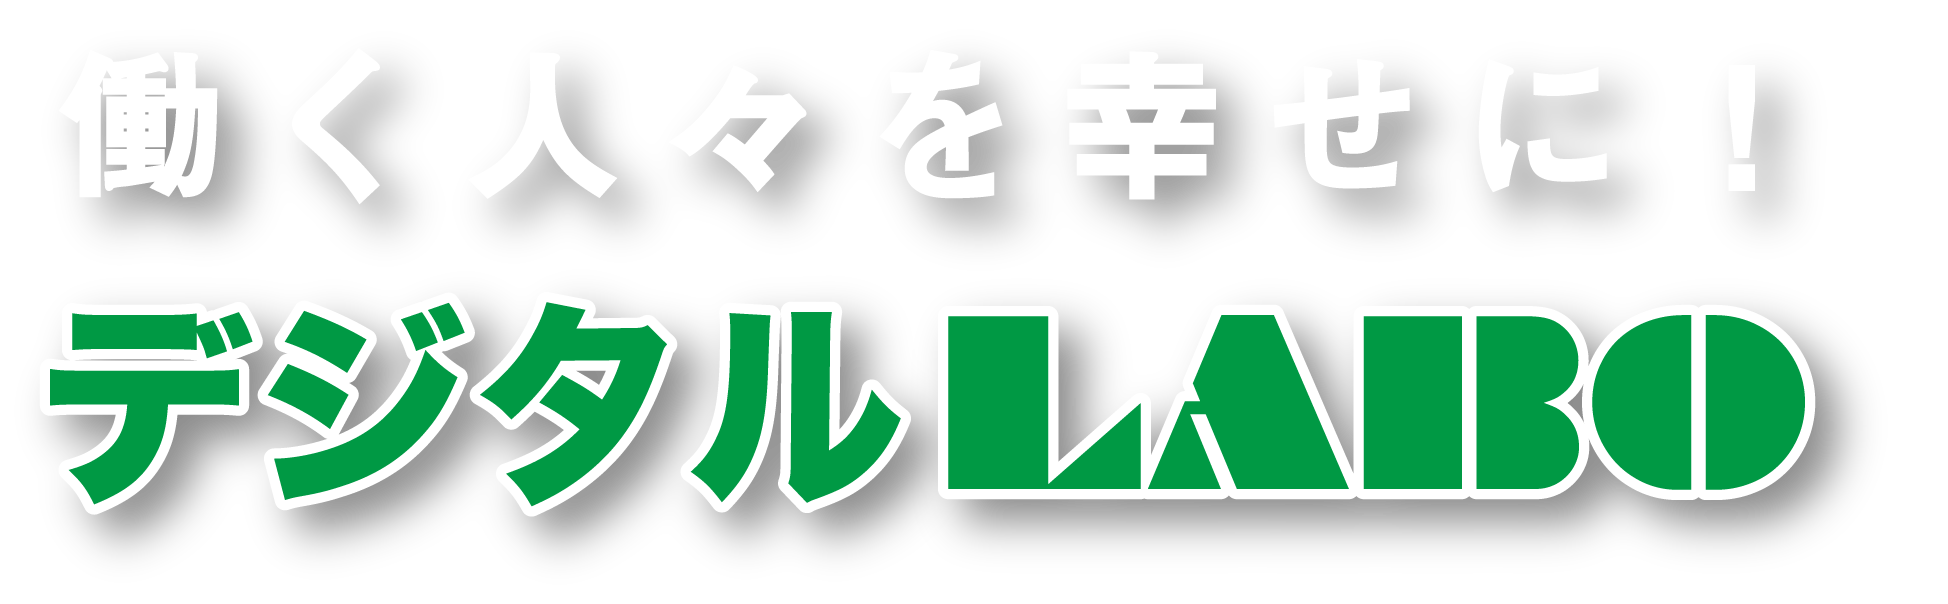 チラシ、名刺、封筒、シール、あらゆる印刷は奈良県大和高田市の印刷屋 デジタルLABOにおまかせください。